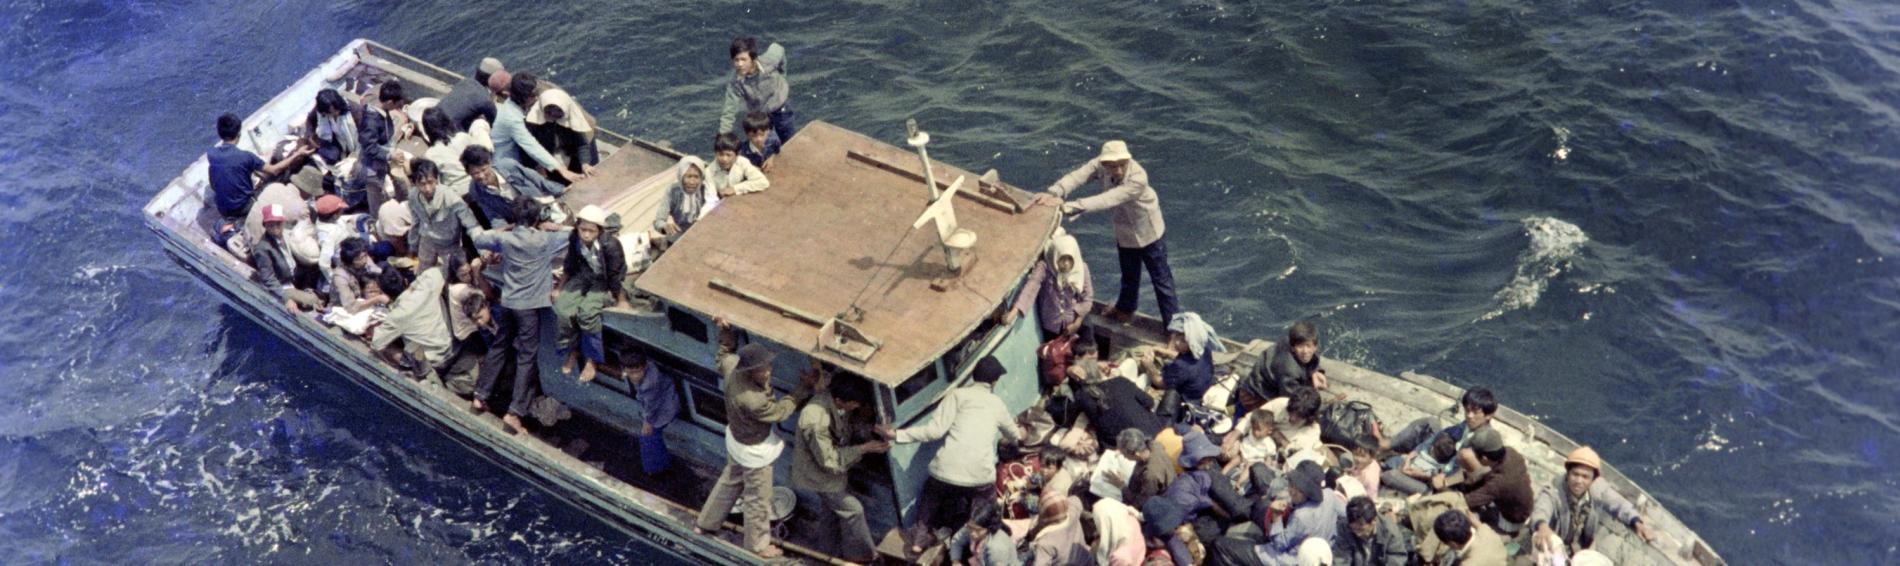 Een boot propvol Vietnamese vluchtelingen dobbert rond op zee.